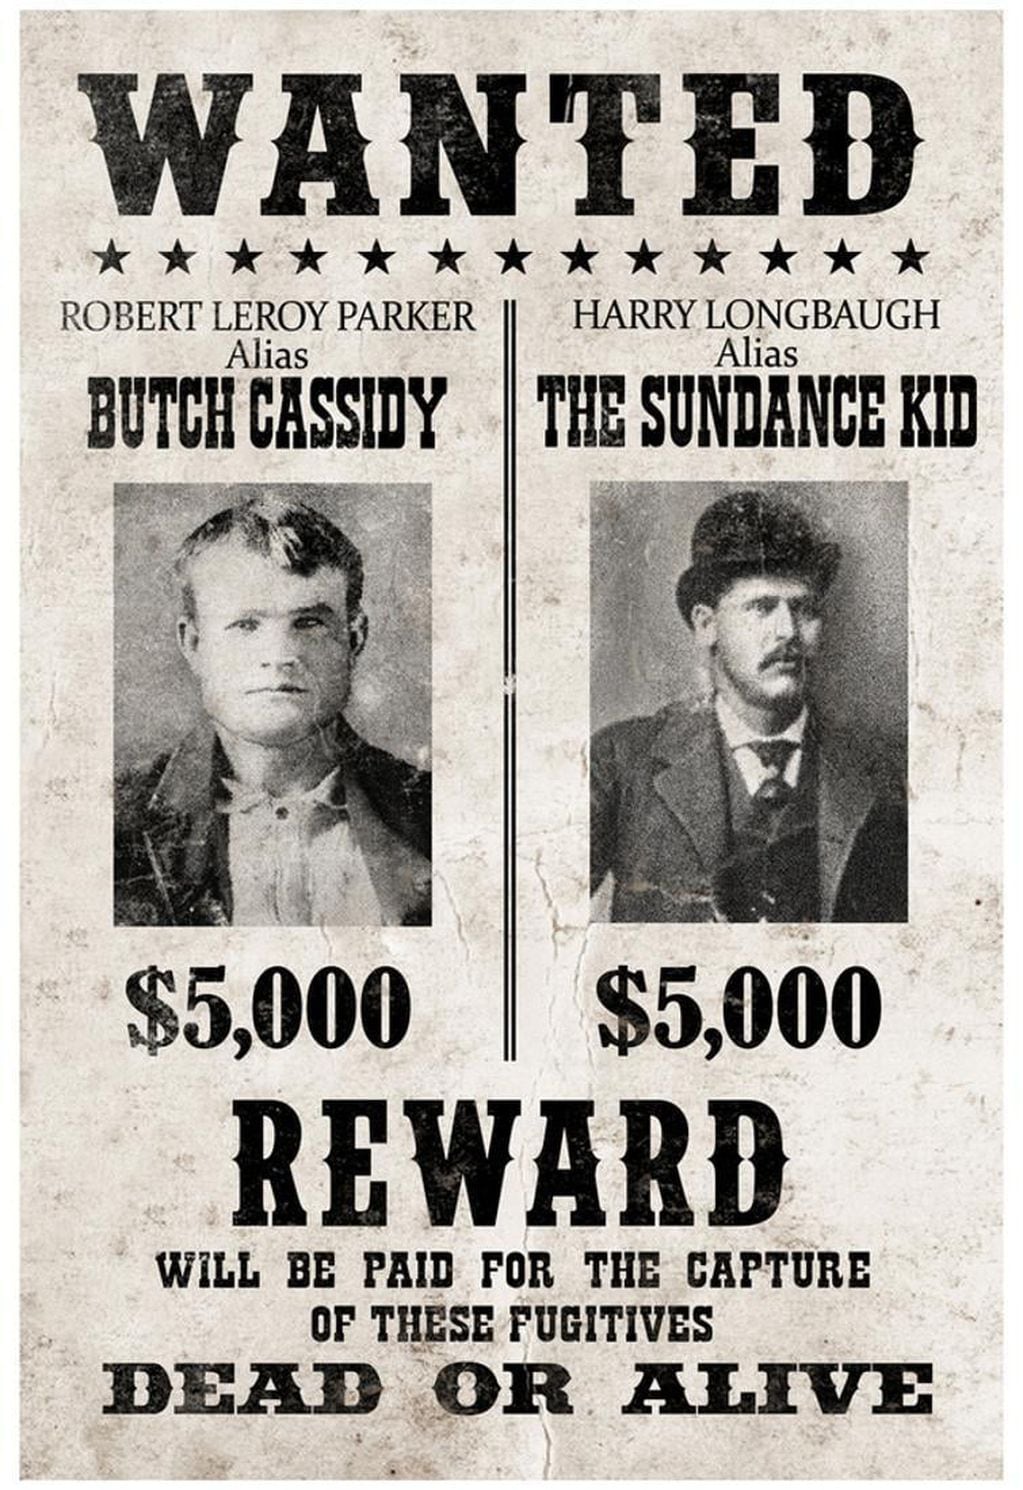 Butch Cassidy y The Sundance Kid eran buscados vivos o muertos en Estados Unidos.